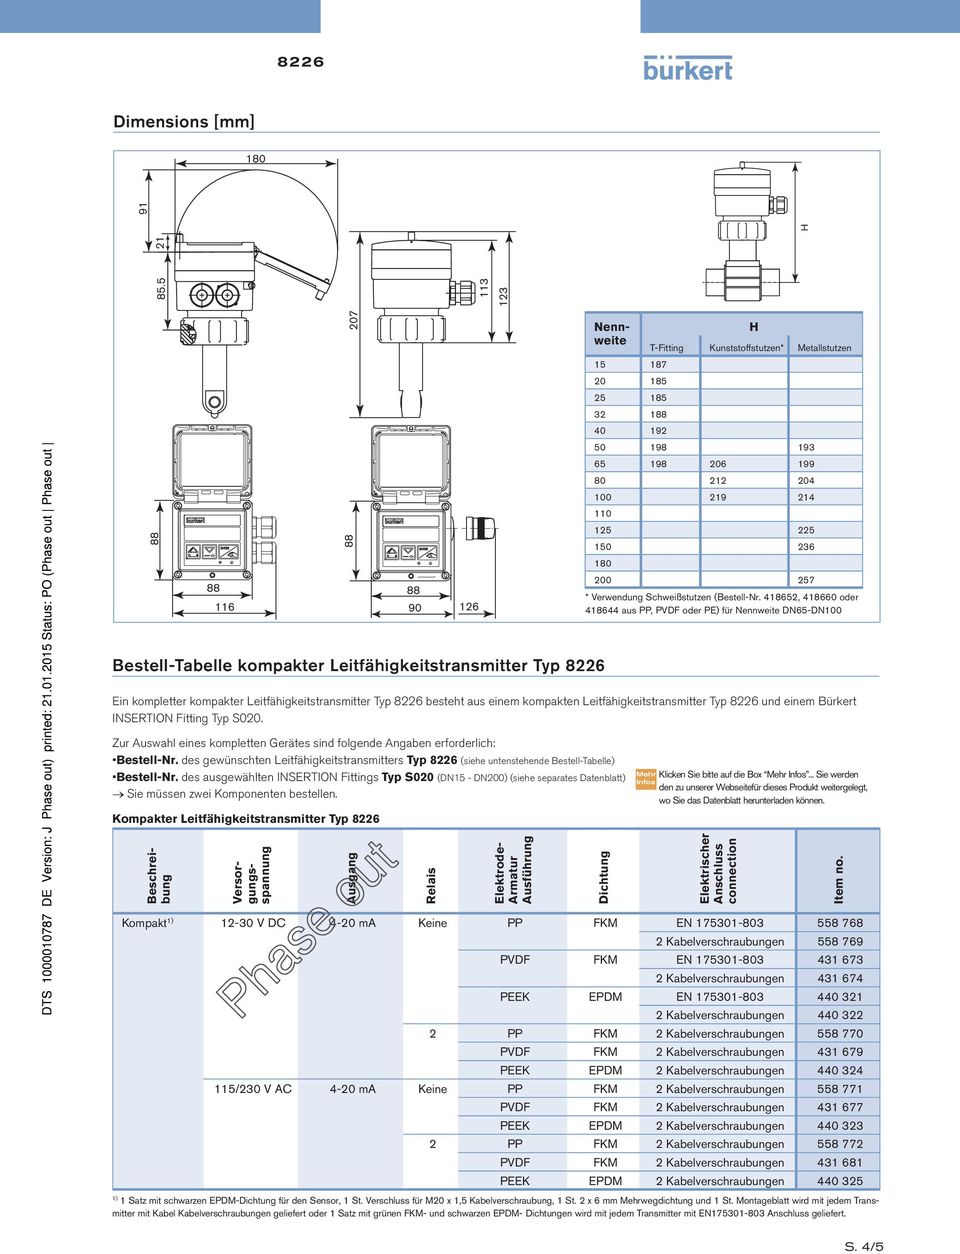 418652, 418660 oder 418644 aus PP, PVDF oder PE) für Nennweite DN65-DN100 Bestell-Tabelle kompakter Leitfähigkeitstransmitter Typ 8226 Ein kompletter kompakter Leitfähigkeitstransmitter Typ 8226